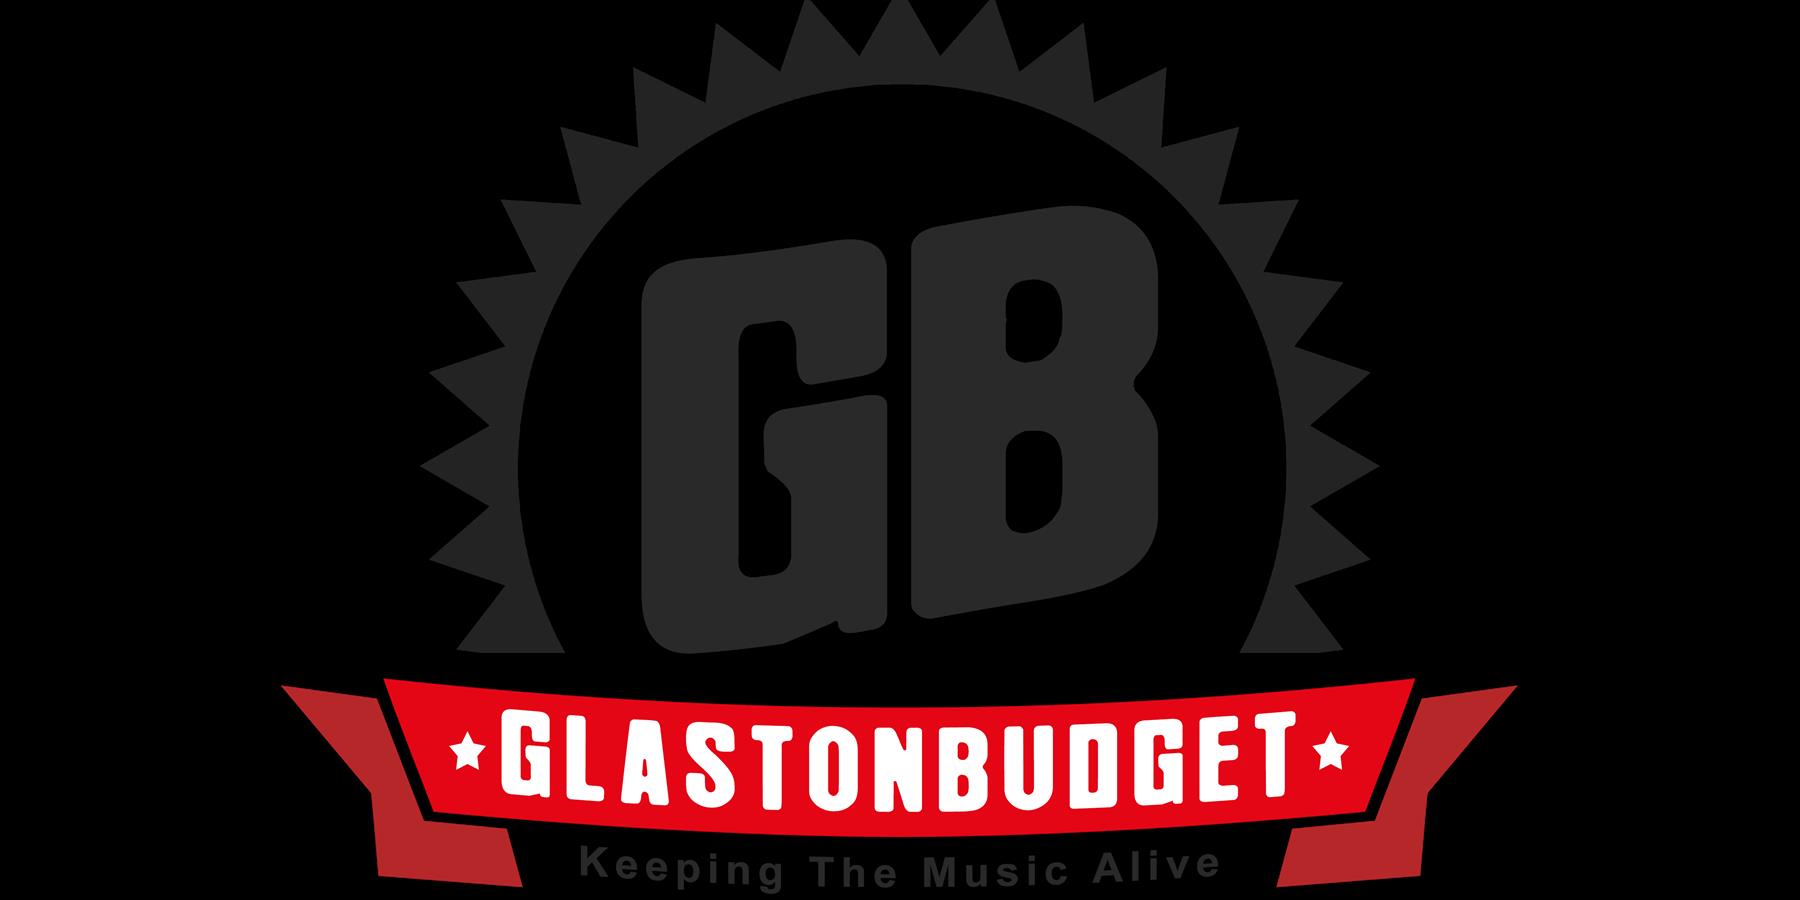 Glastonbudget logo